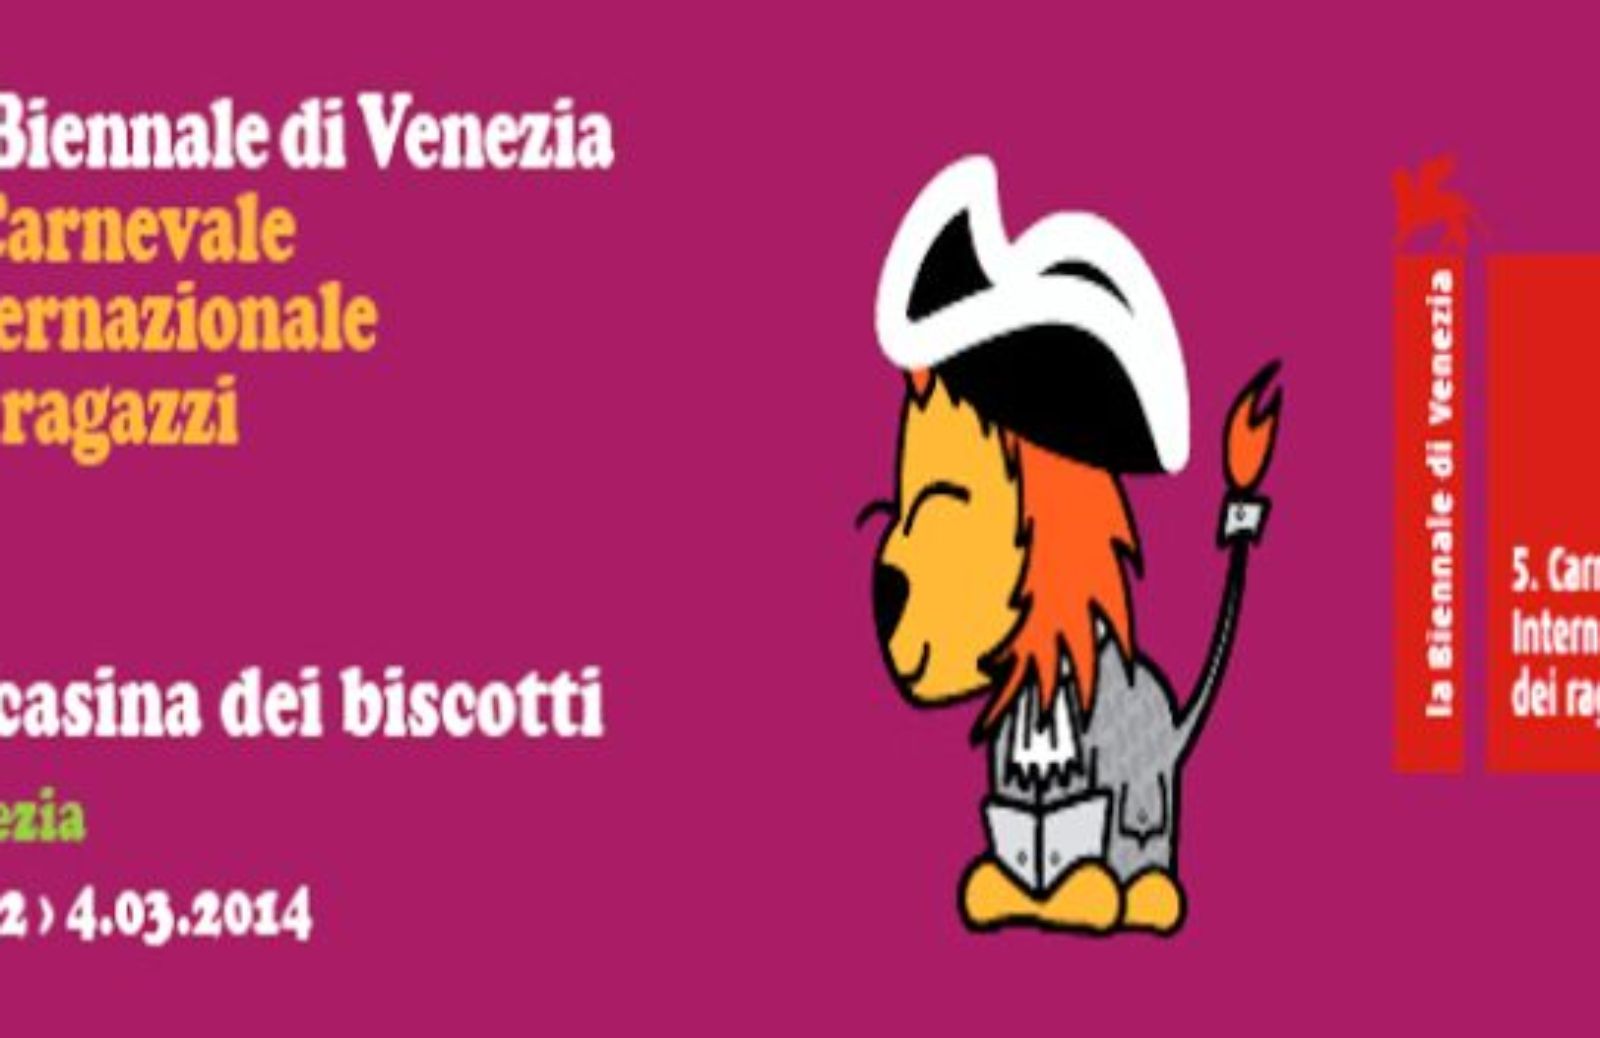 Carnevale dei ragazzi a Venezia: insieme contro la fame nel mondo